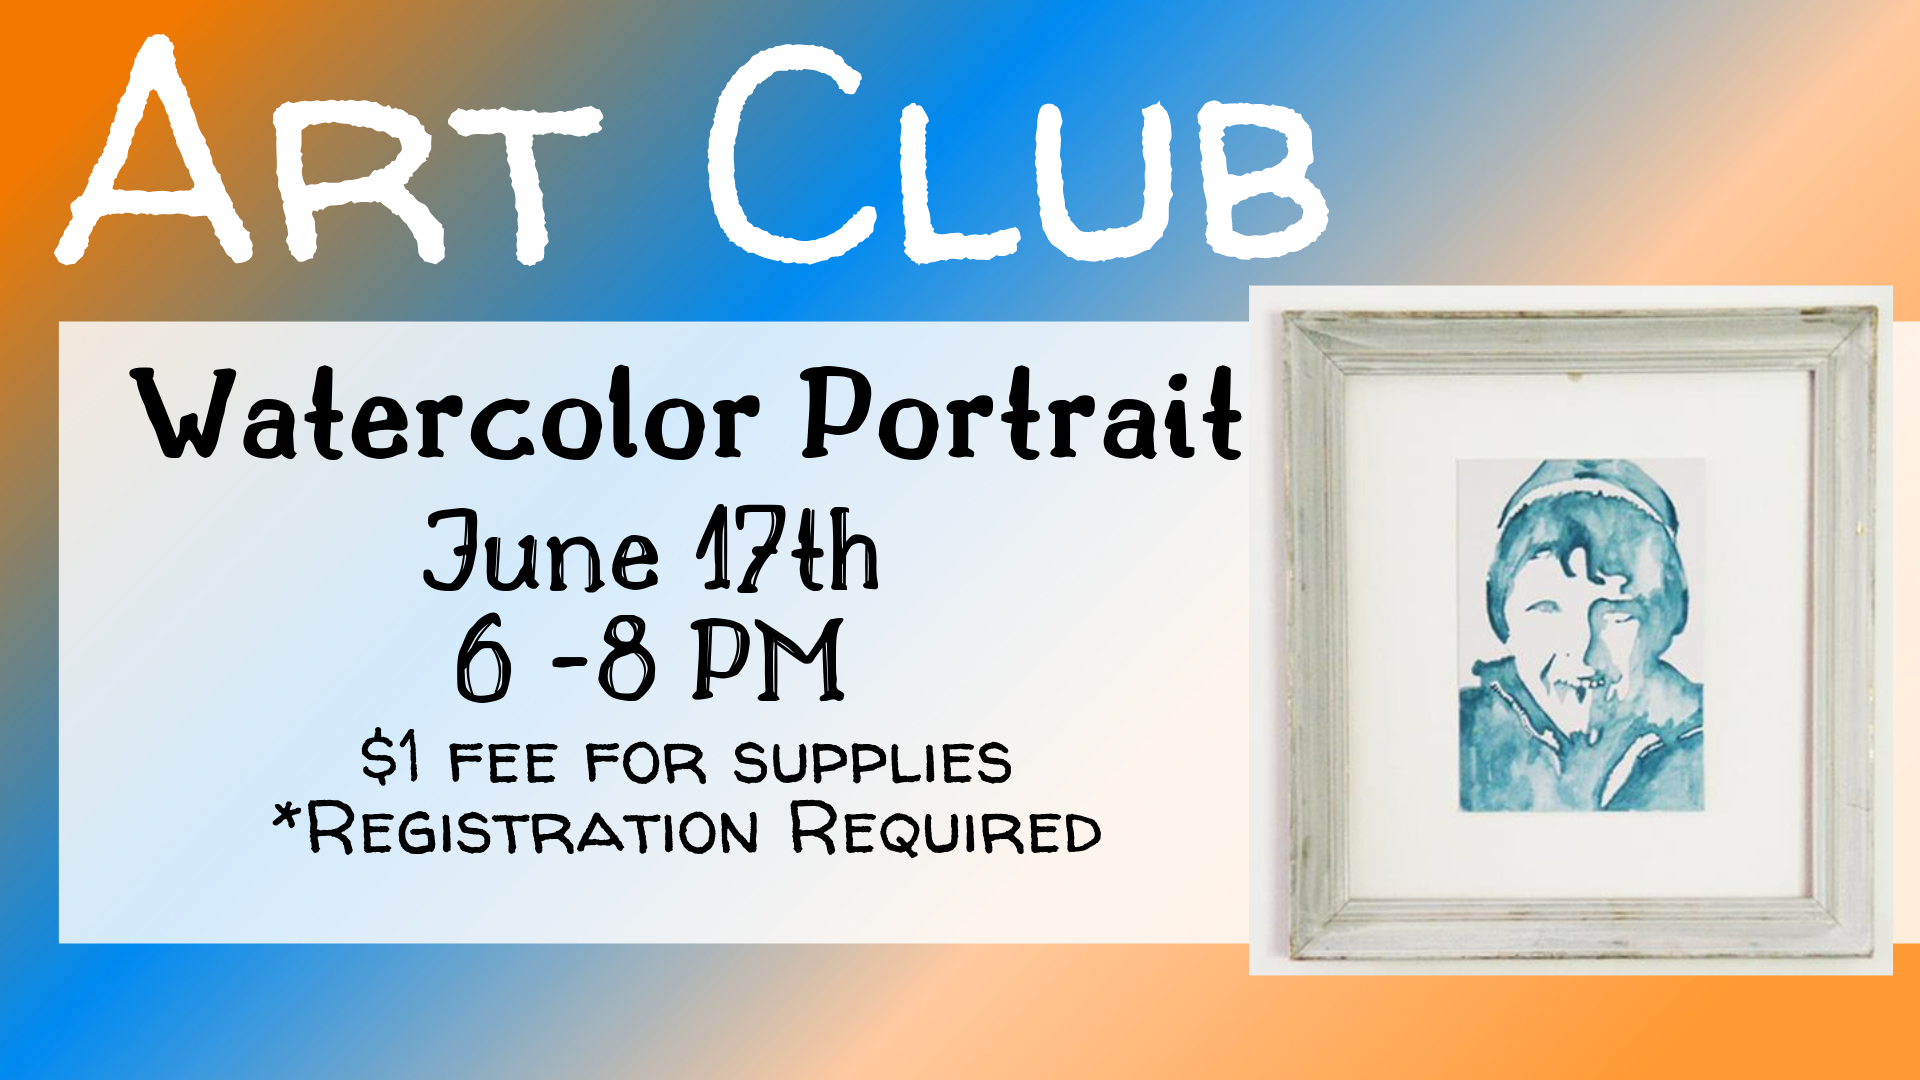 Art Club - Watercolor Portrait